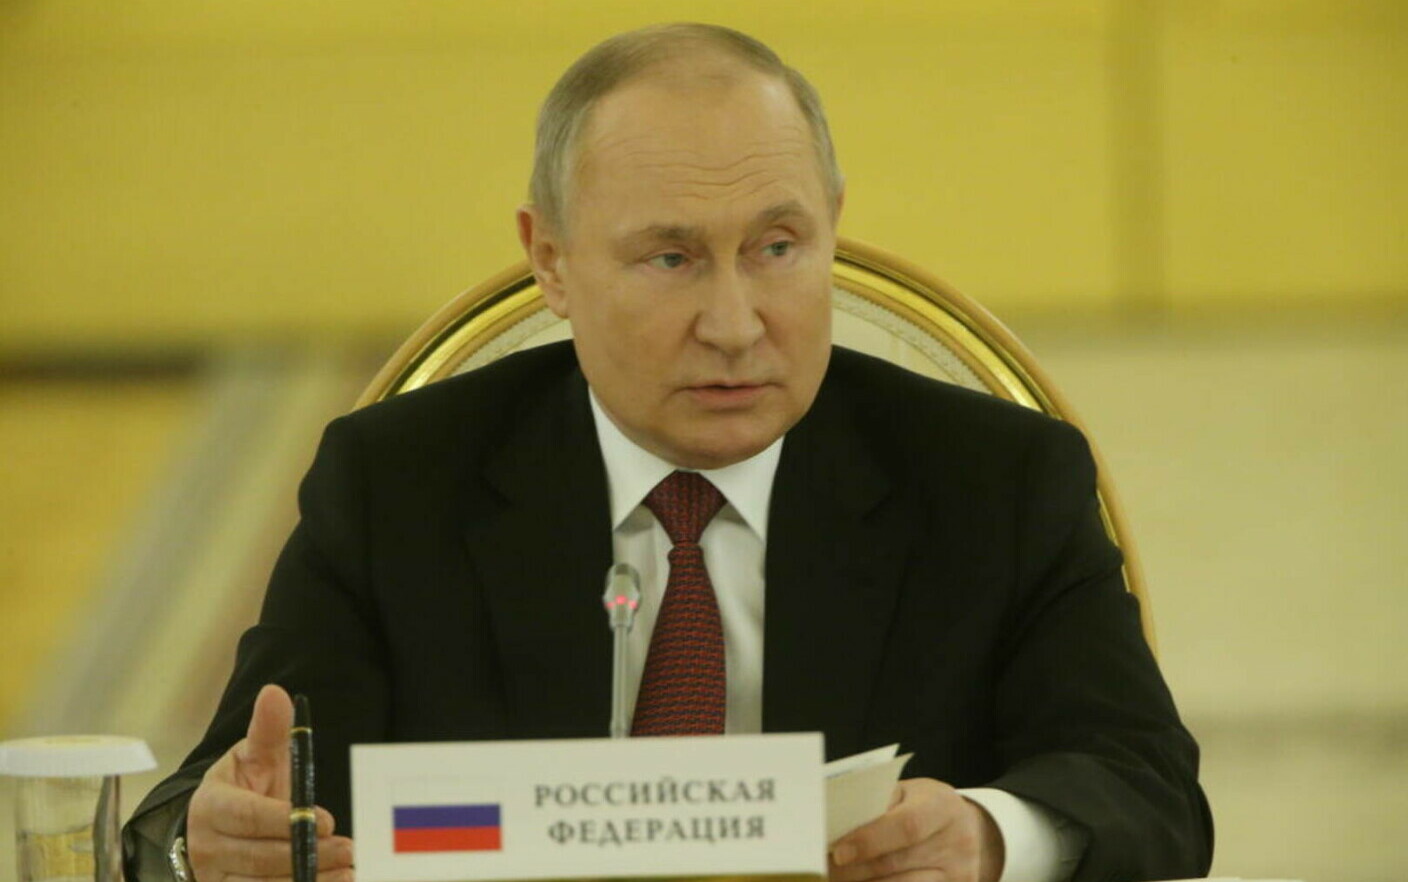 Putin, pronto ad aiutare a “superare la crisi alimentare” se le sanzioni verranno revocate.  Di cosa ha discusso con il Presidente del Consiglio italiano